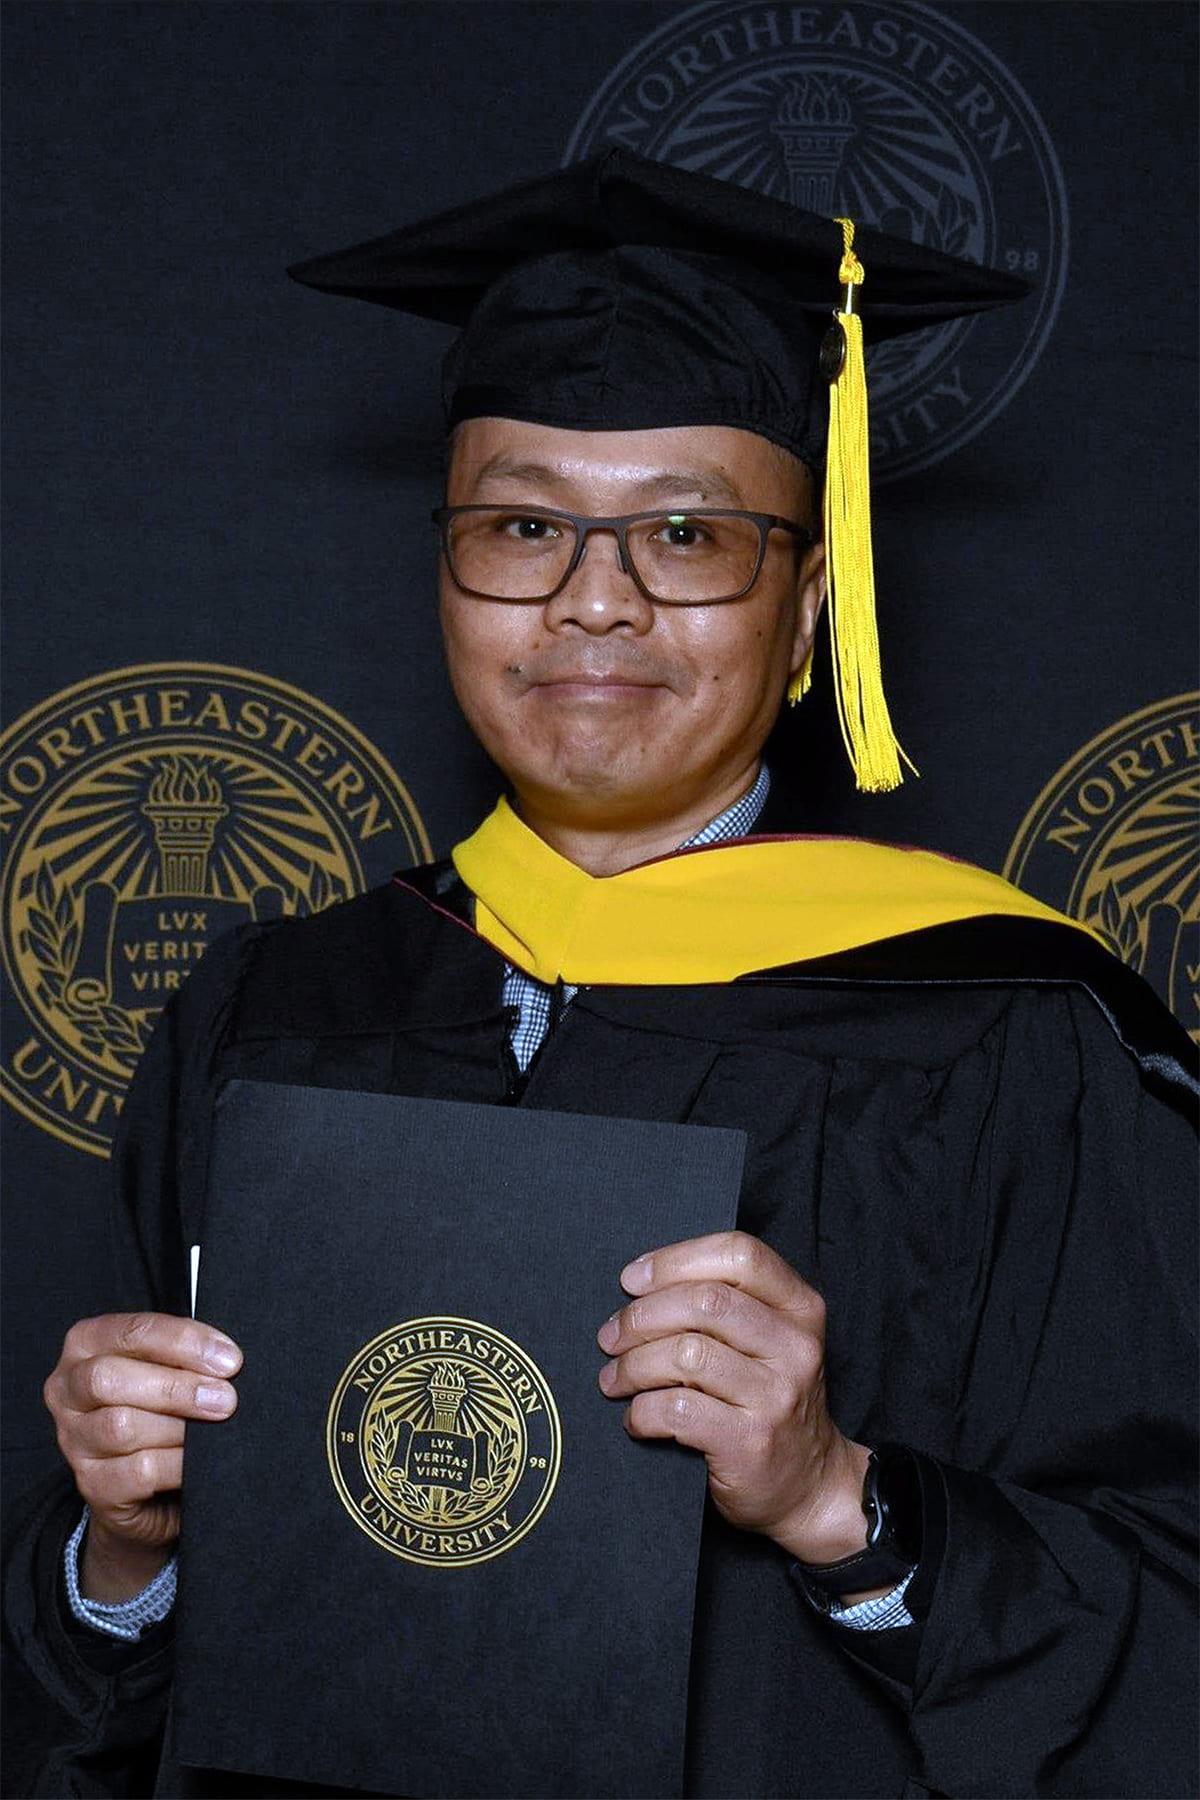 David Mak graduating from Northeastern